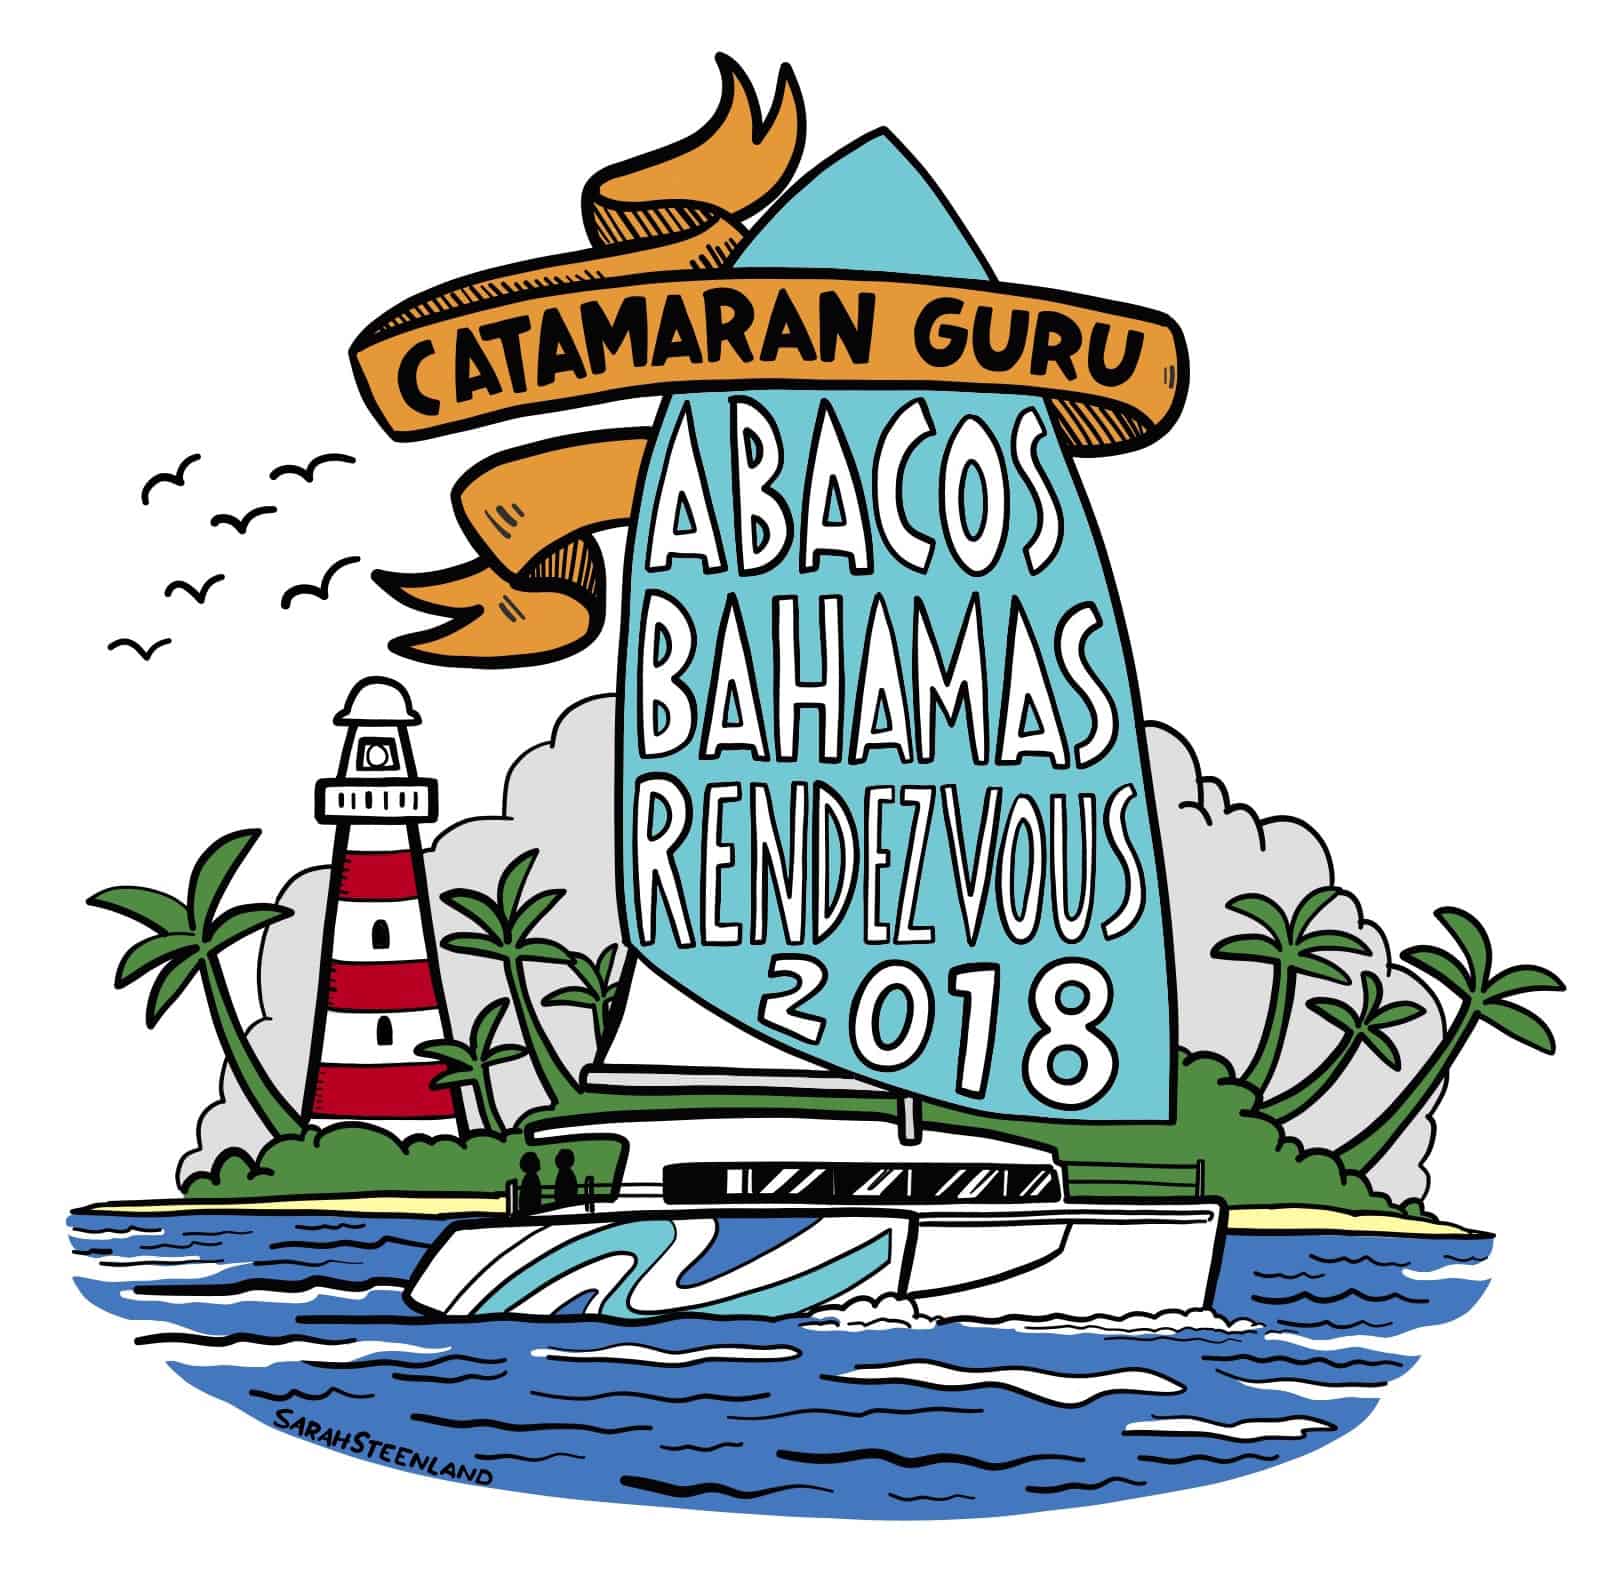 Catamaran Guru Rendezvous in the abacos for 2018